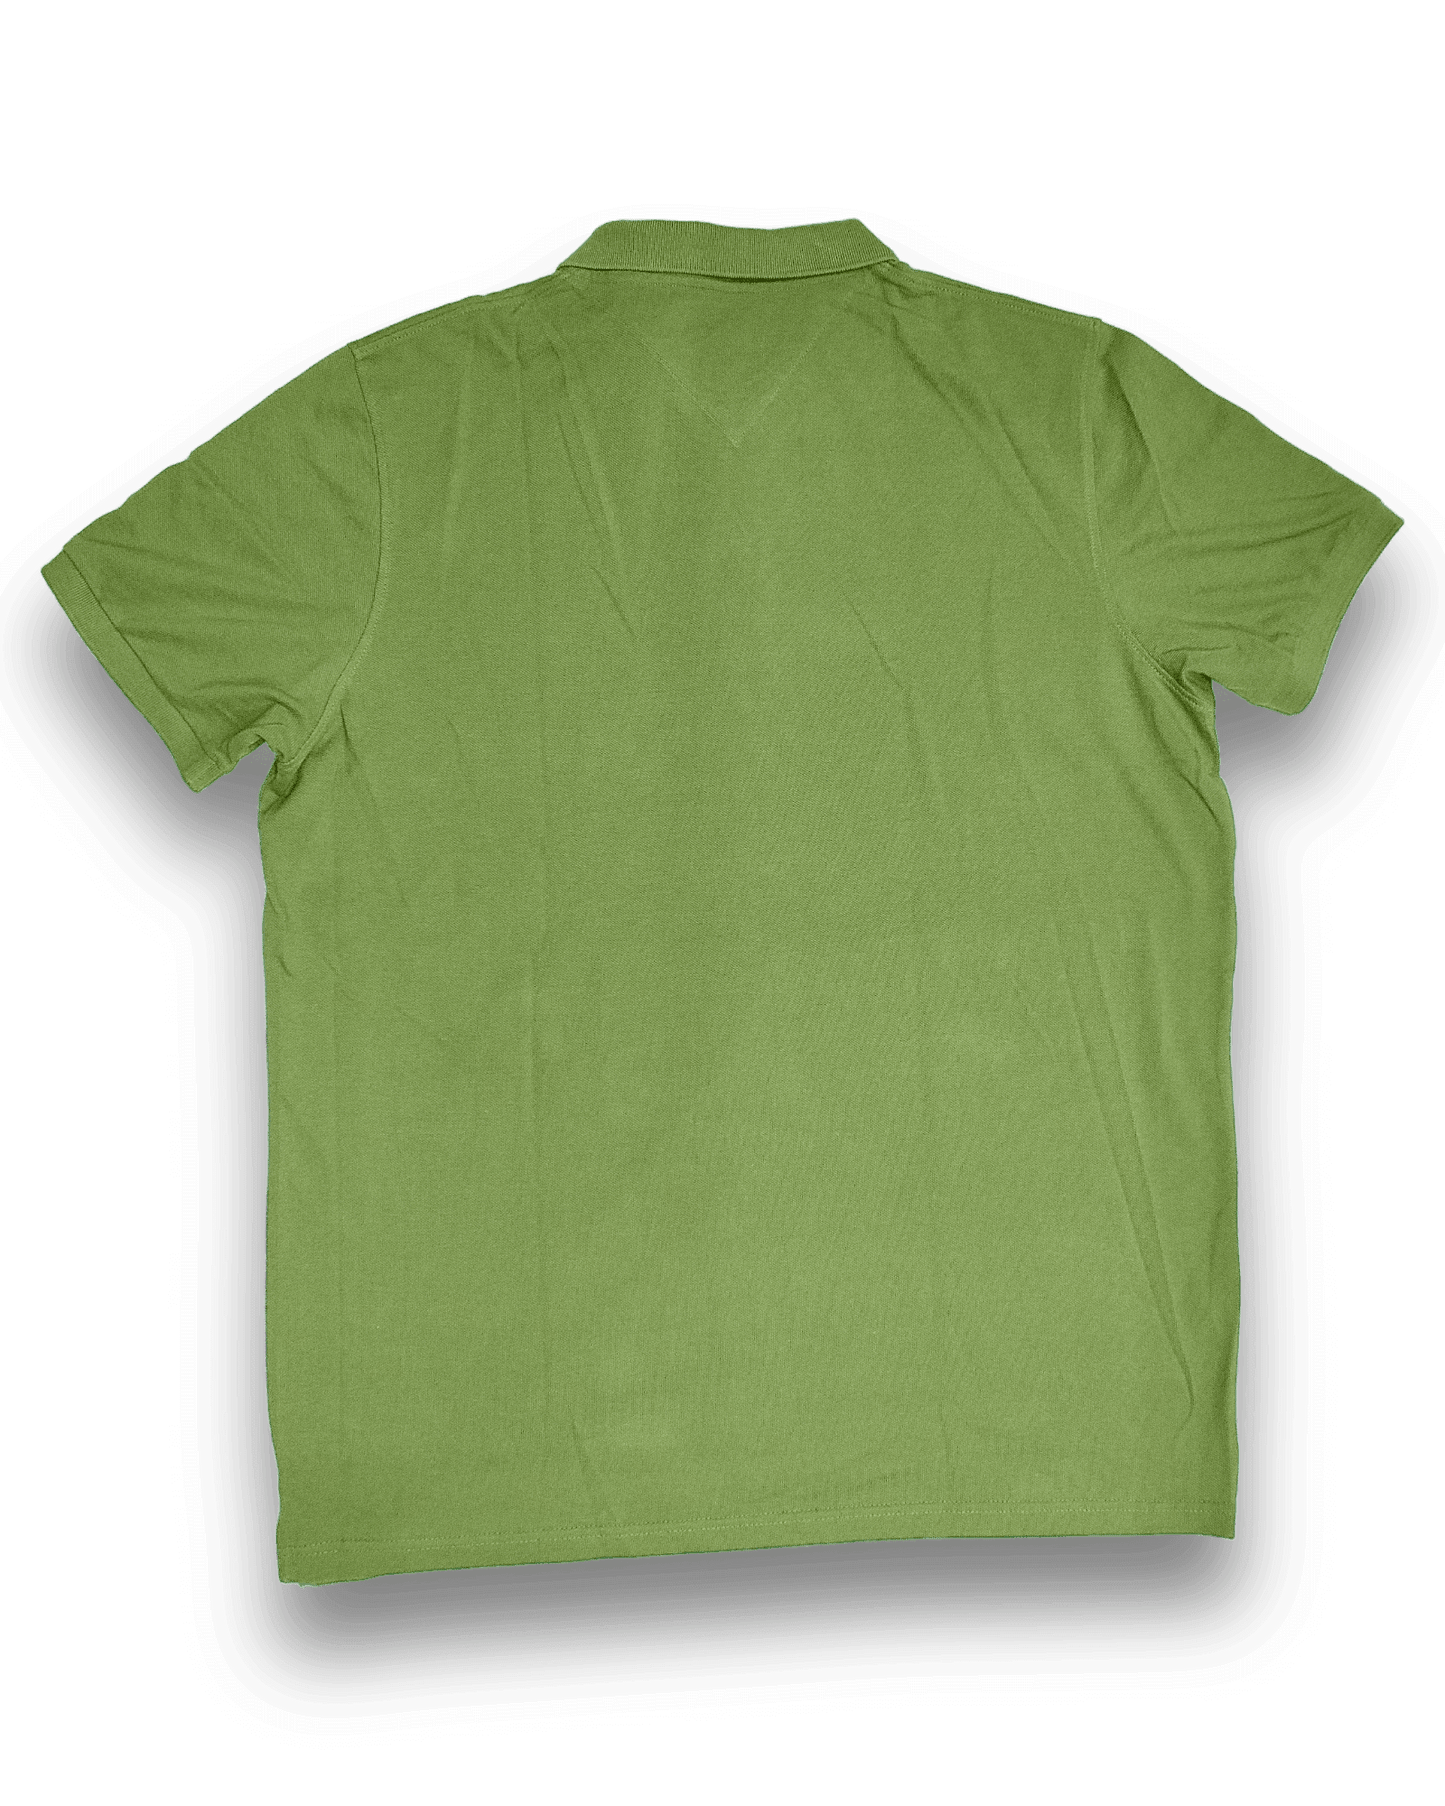 Avacado Green Polo Shirt - Apparel For Less